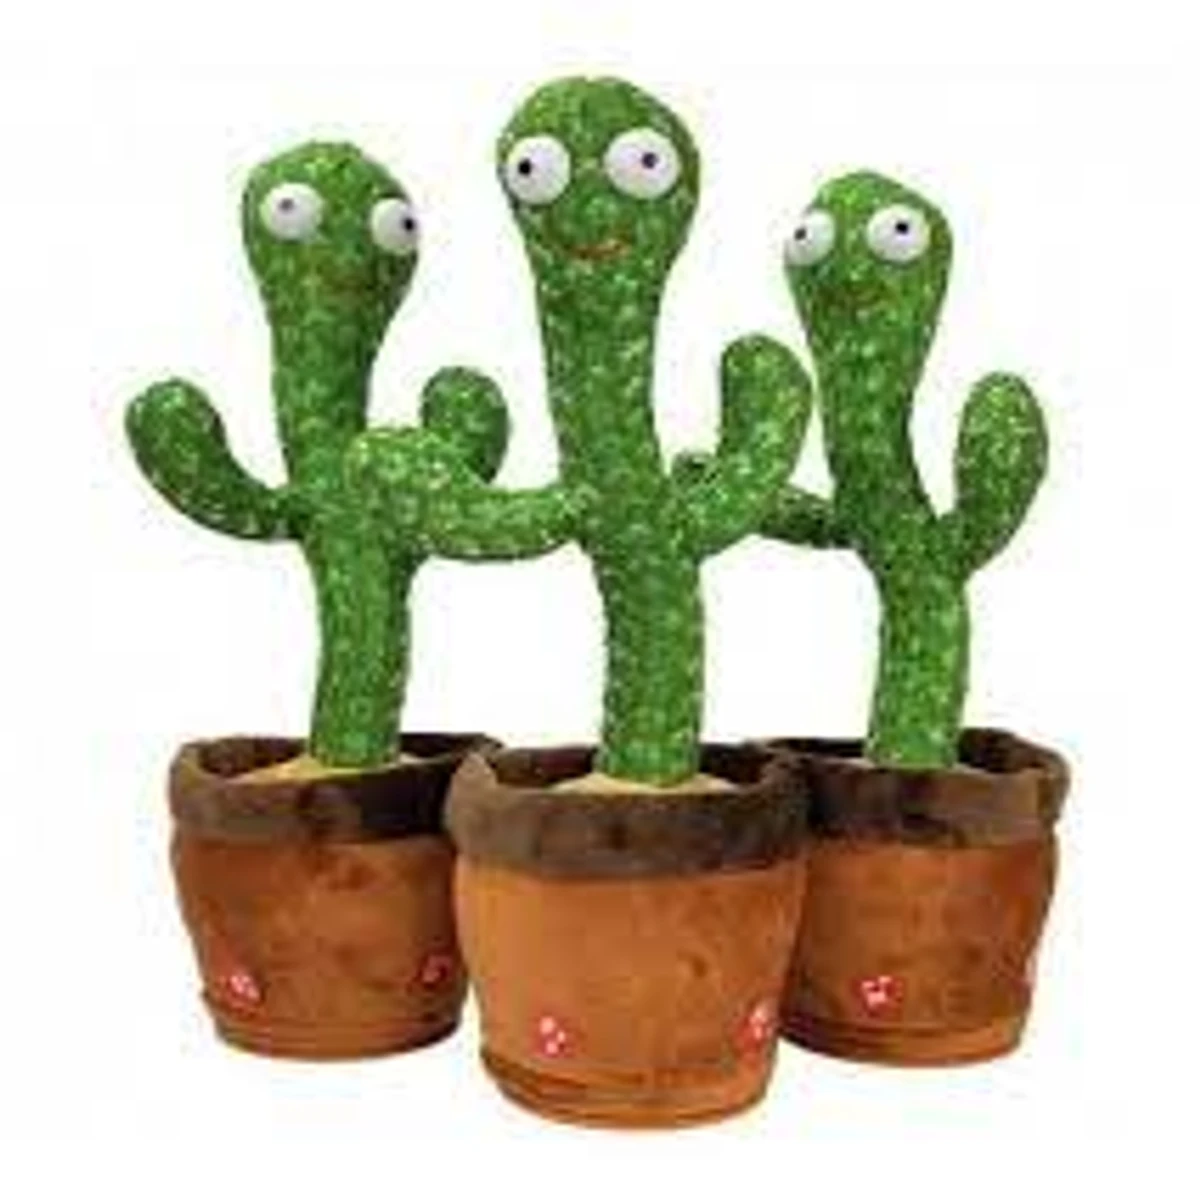 Premium Dancing Cactus Toy Premium